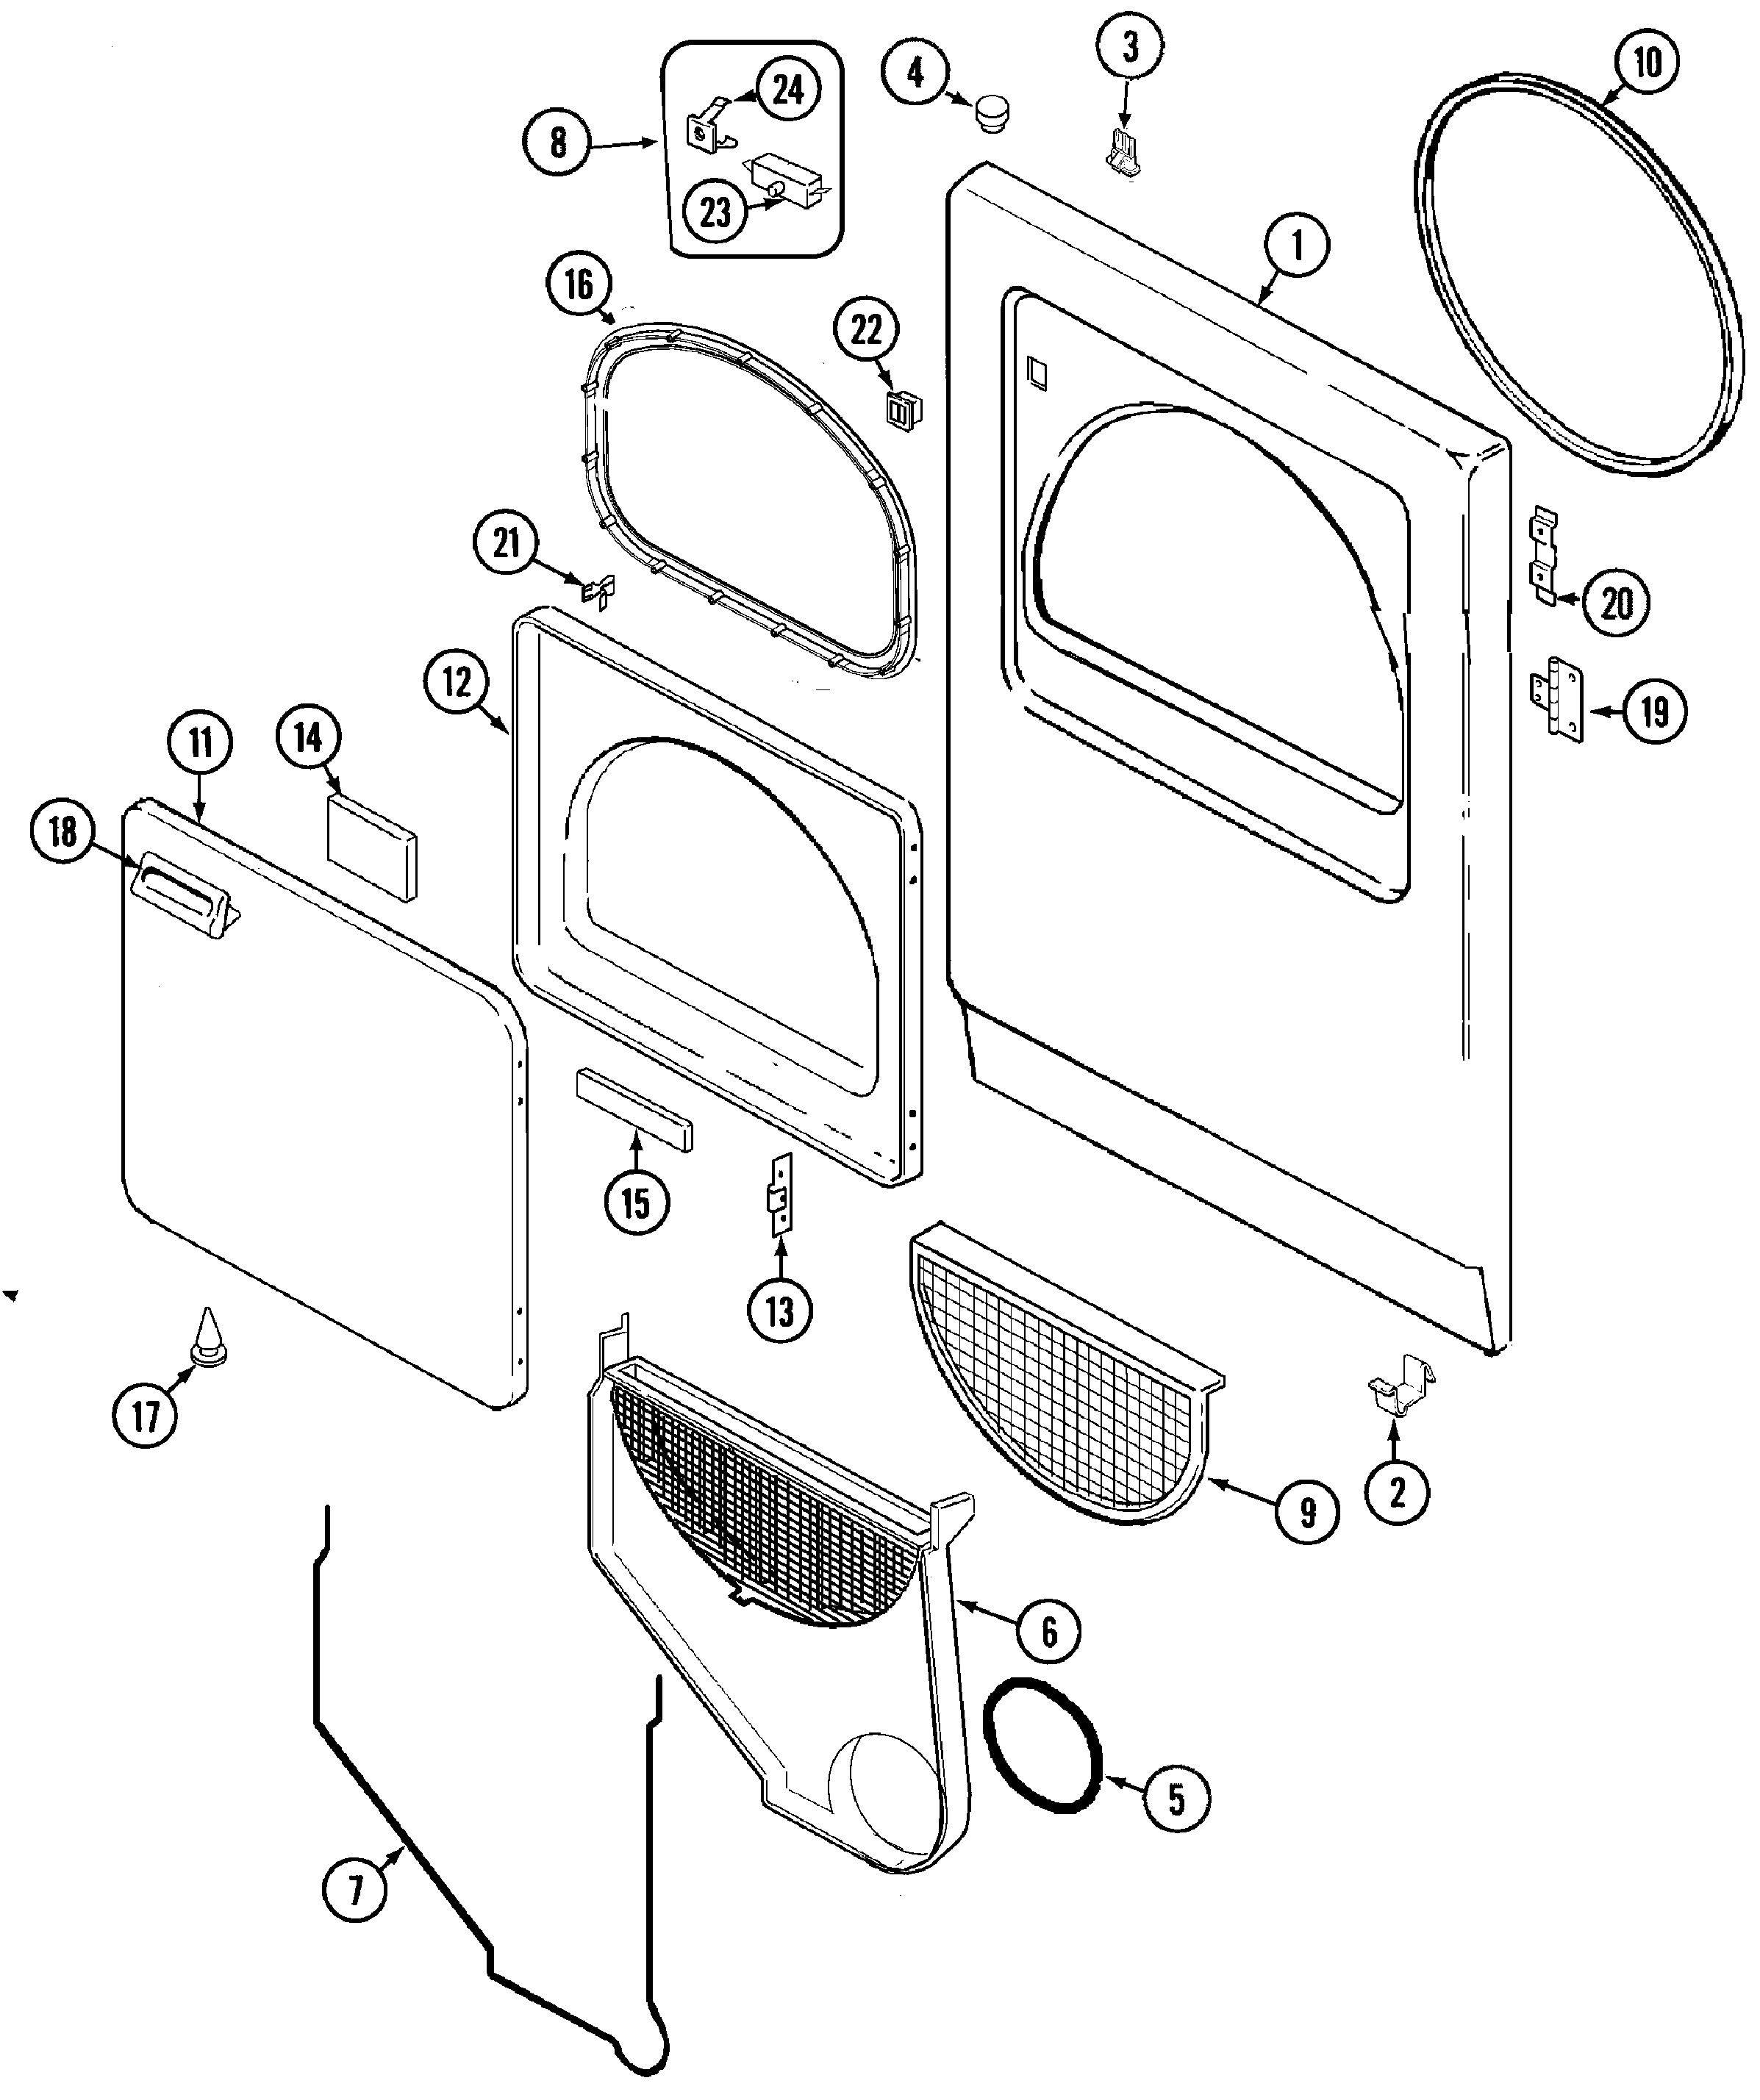 Universal Ge Dryer Motor Wiring Wiring Diagrams